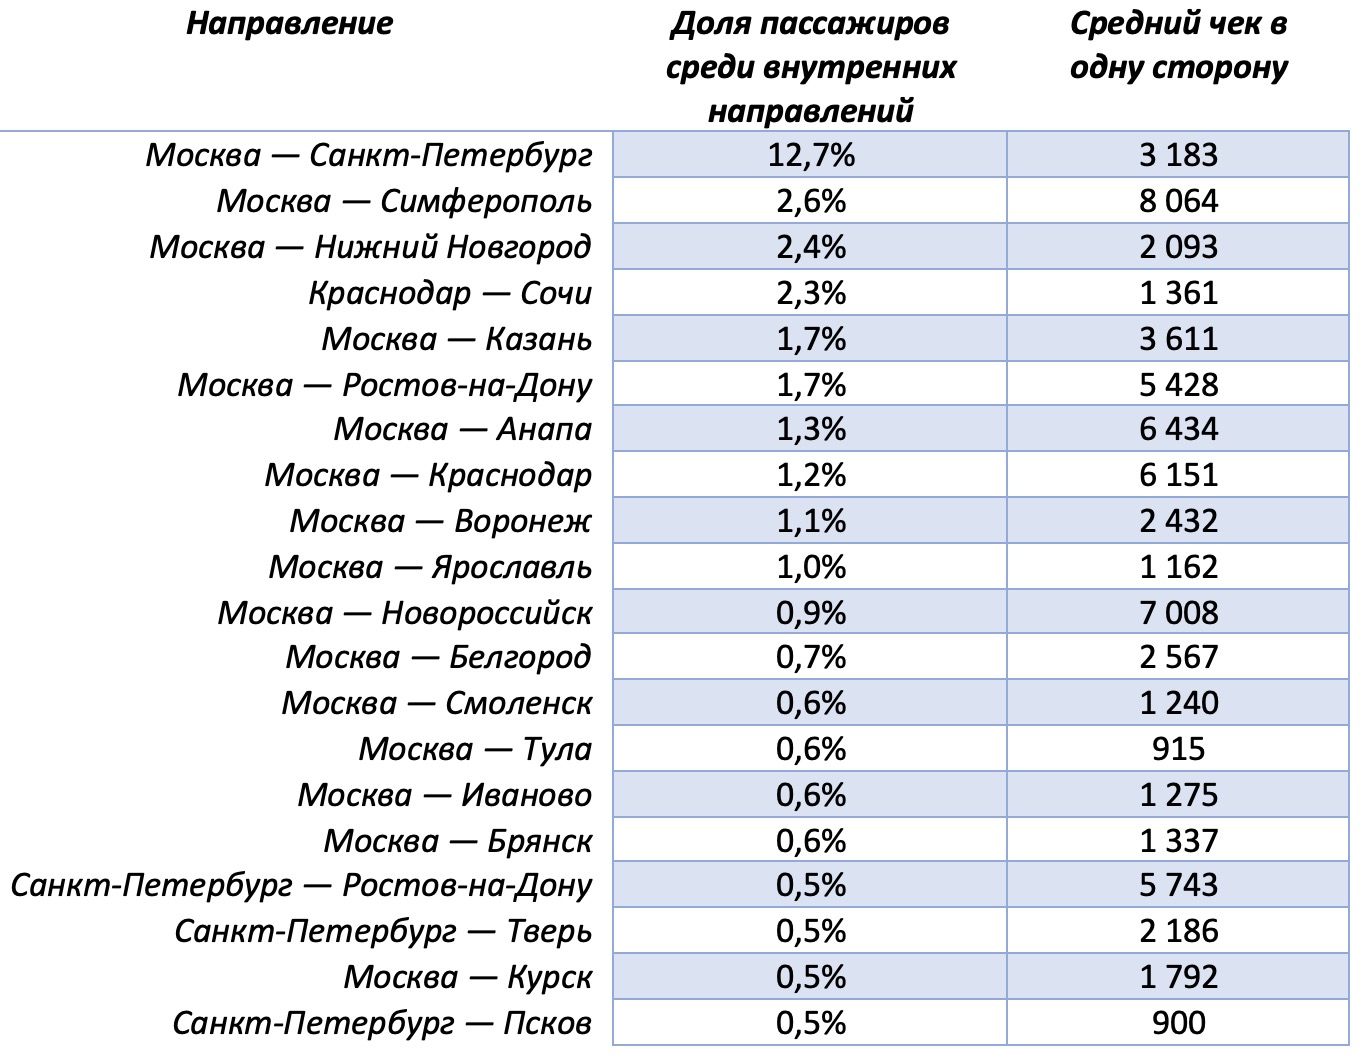 Воронеж вошел в десятку самых популярных маршрутов на май 2023 года на поезде